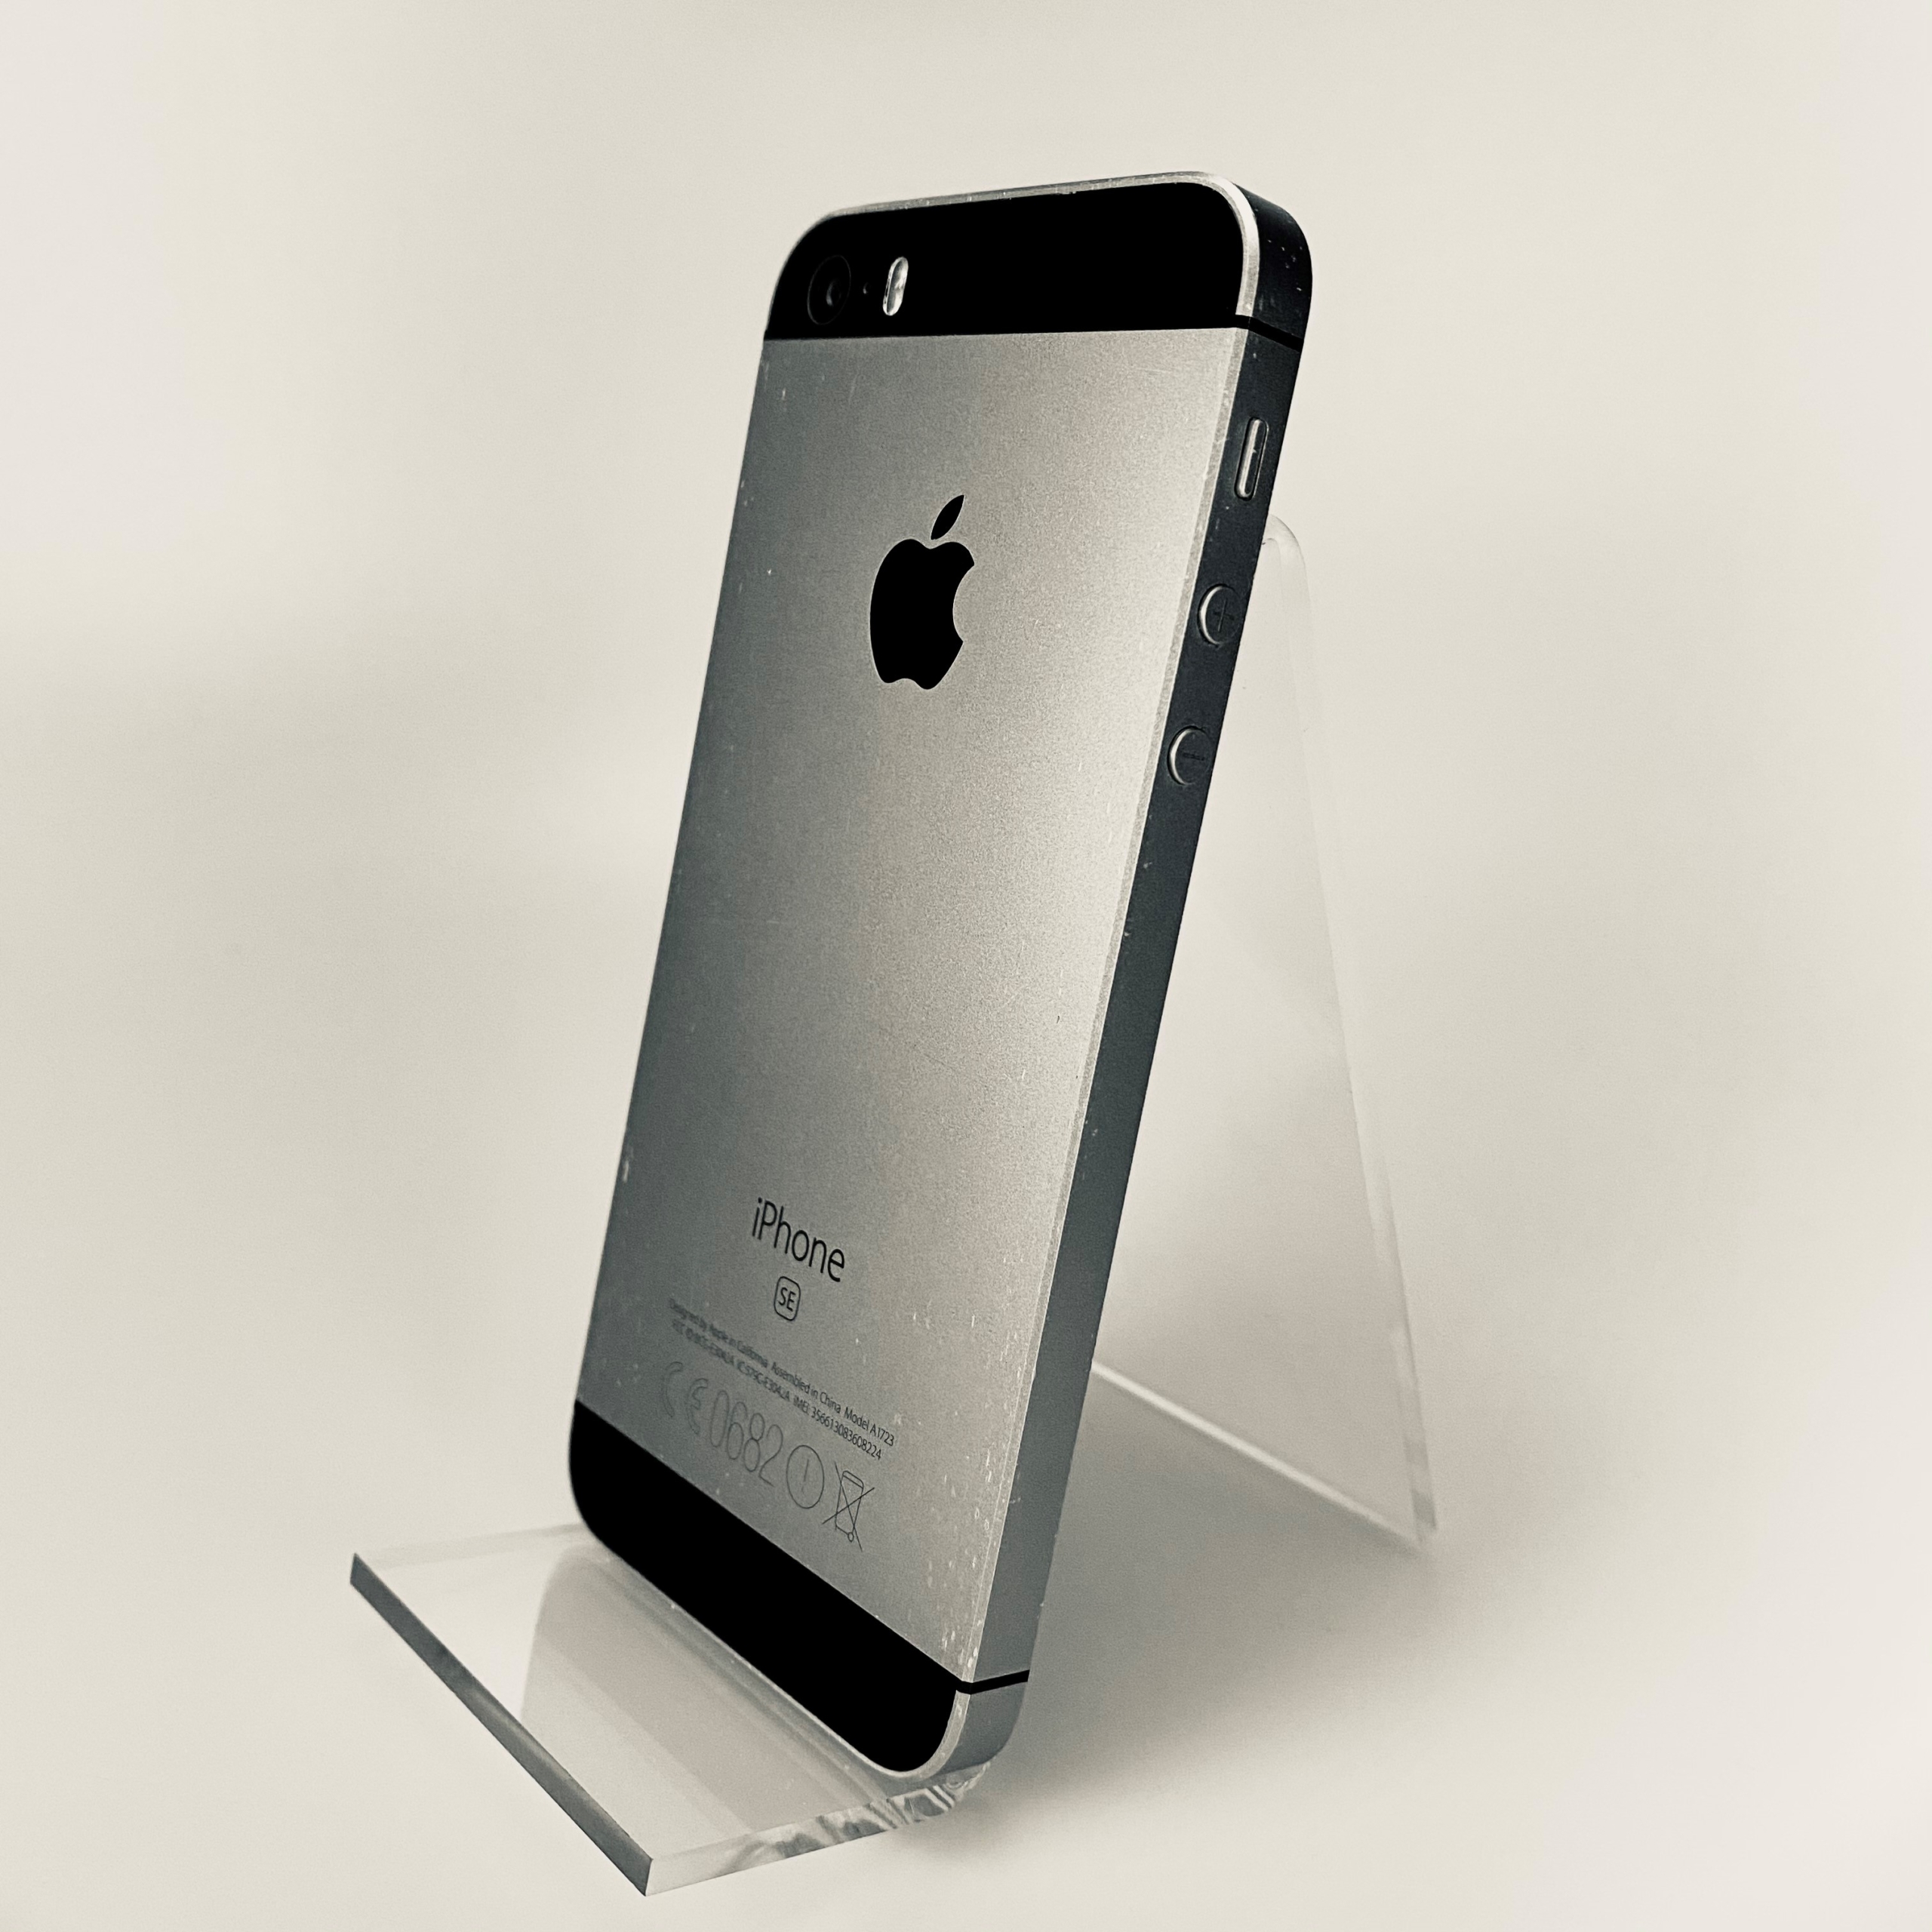 iPhone SE | 32 GB | Space Grey | Optie1 Nijkerk